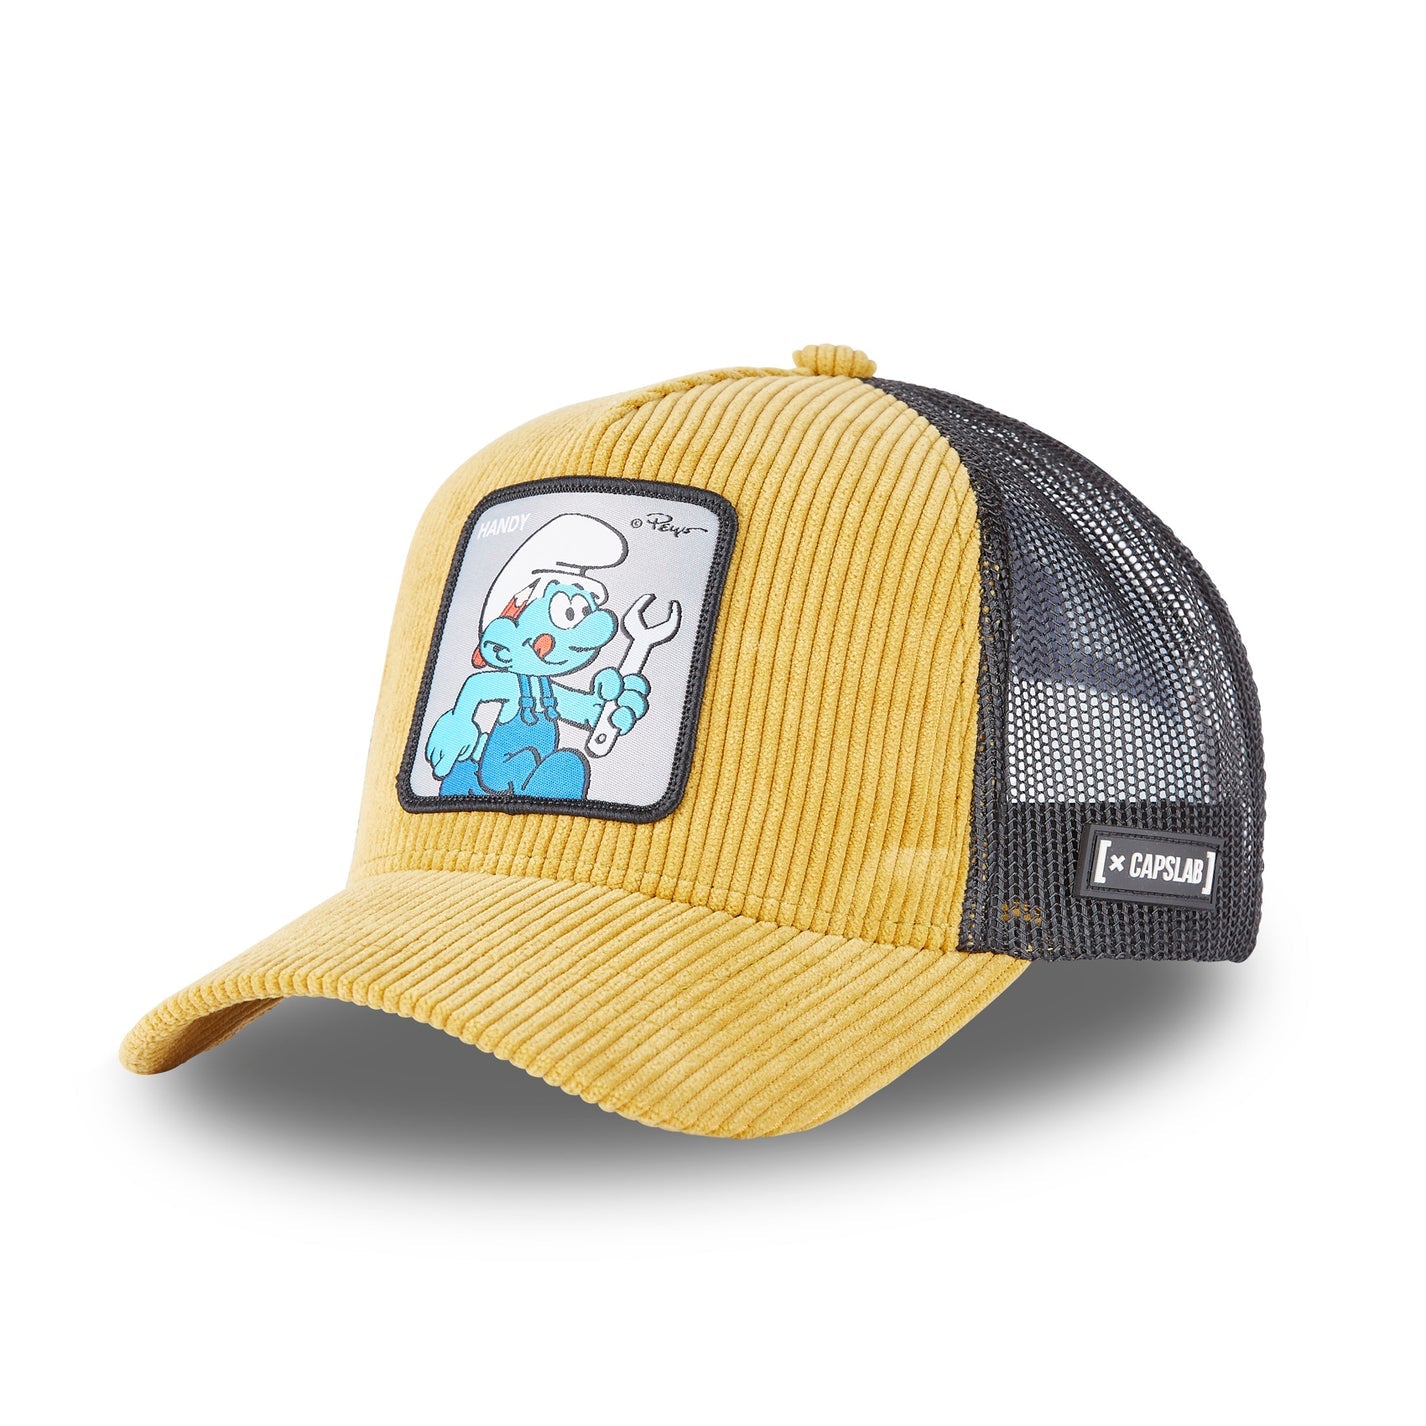 The Smurfs Handy Trucker Hat